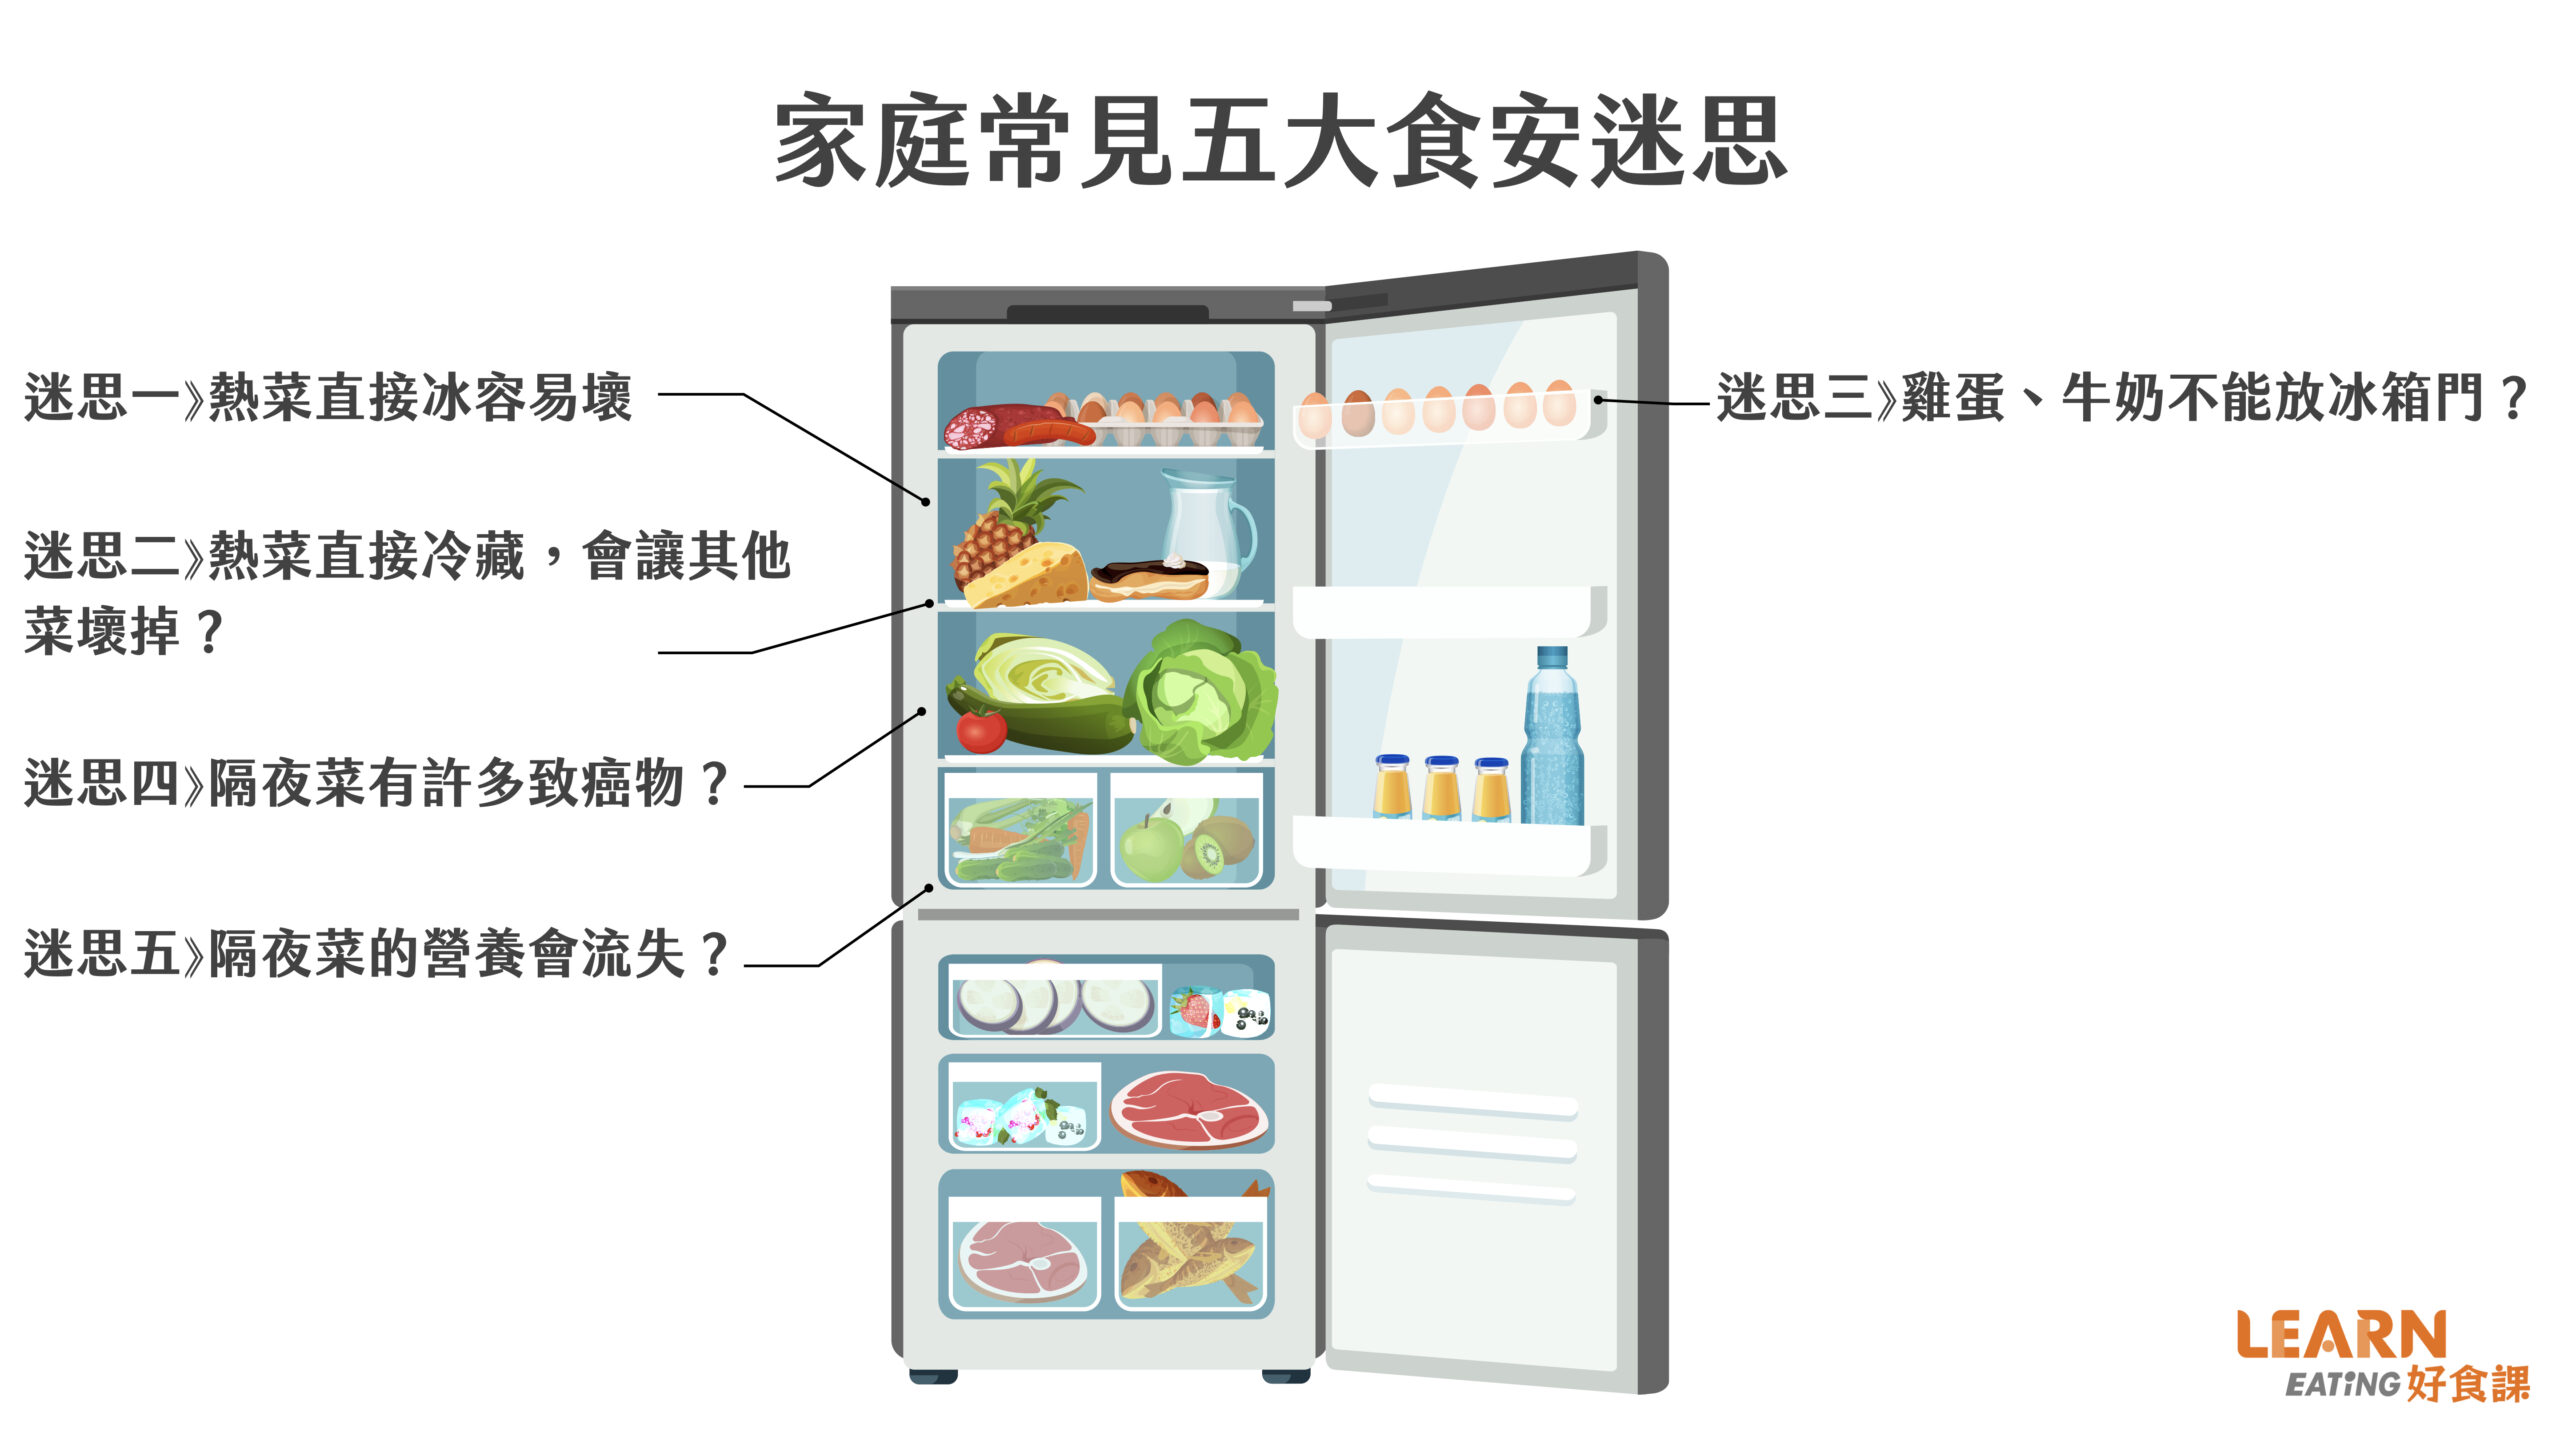 隔夜菜-食安-冰箱-熱菜-直接冰-會壞嗎